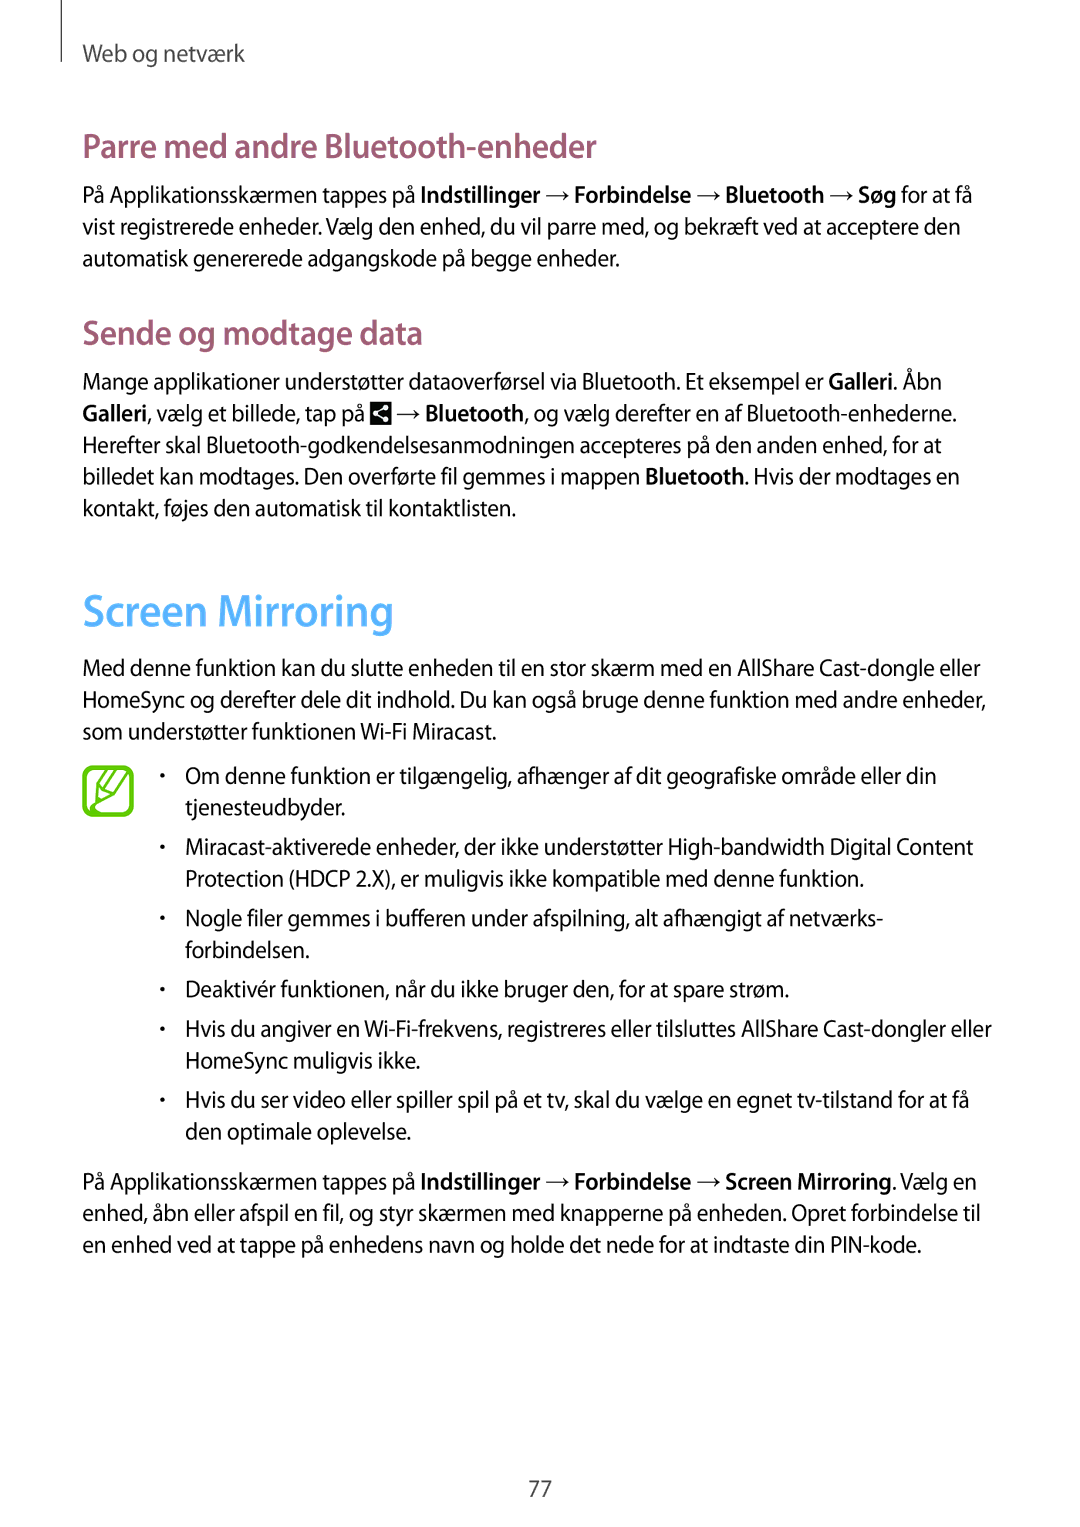 Samsung SM-N7505ZWANEE, SM-N7505ZKANEE manual Screen Mirroring, Parre med andre Bluetooth-enheder, Sende og modtage data 